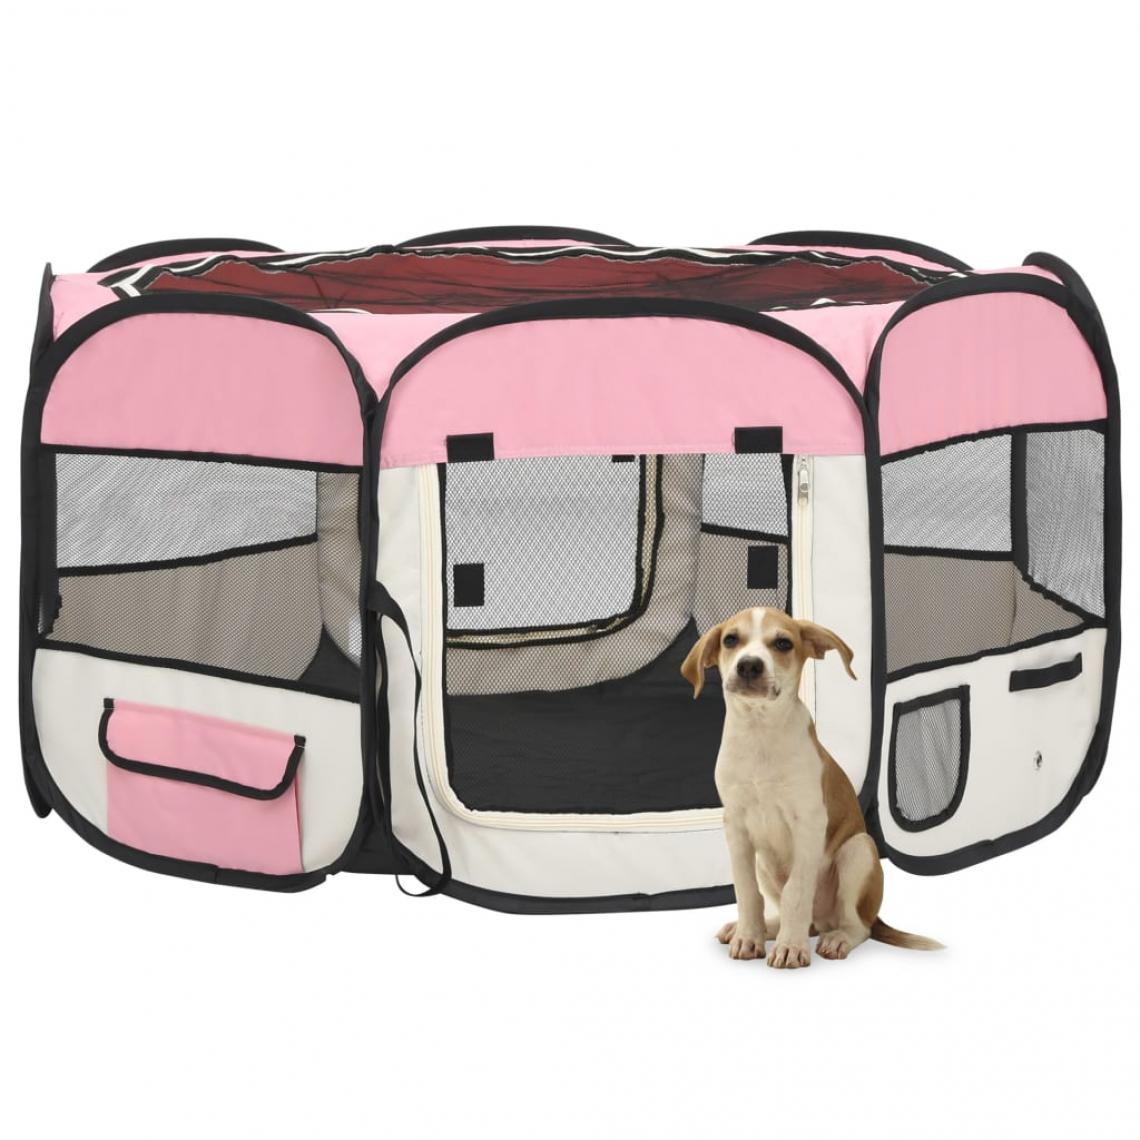 Helloshop26 - Parc pliable pour chien avec sac de transport 125 x 125 x 61 cm rose 02_0001731 - Equipement de transport pour chat